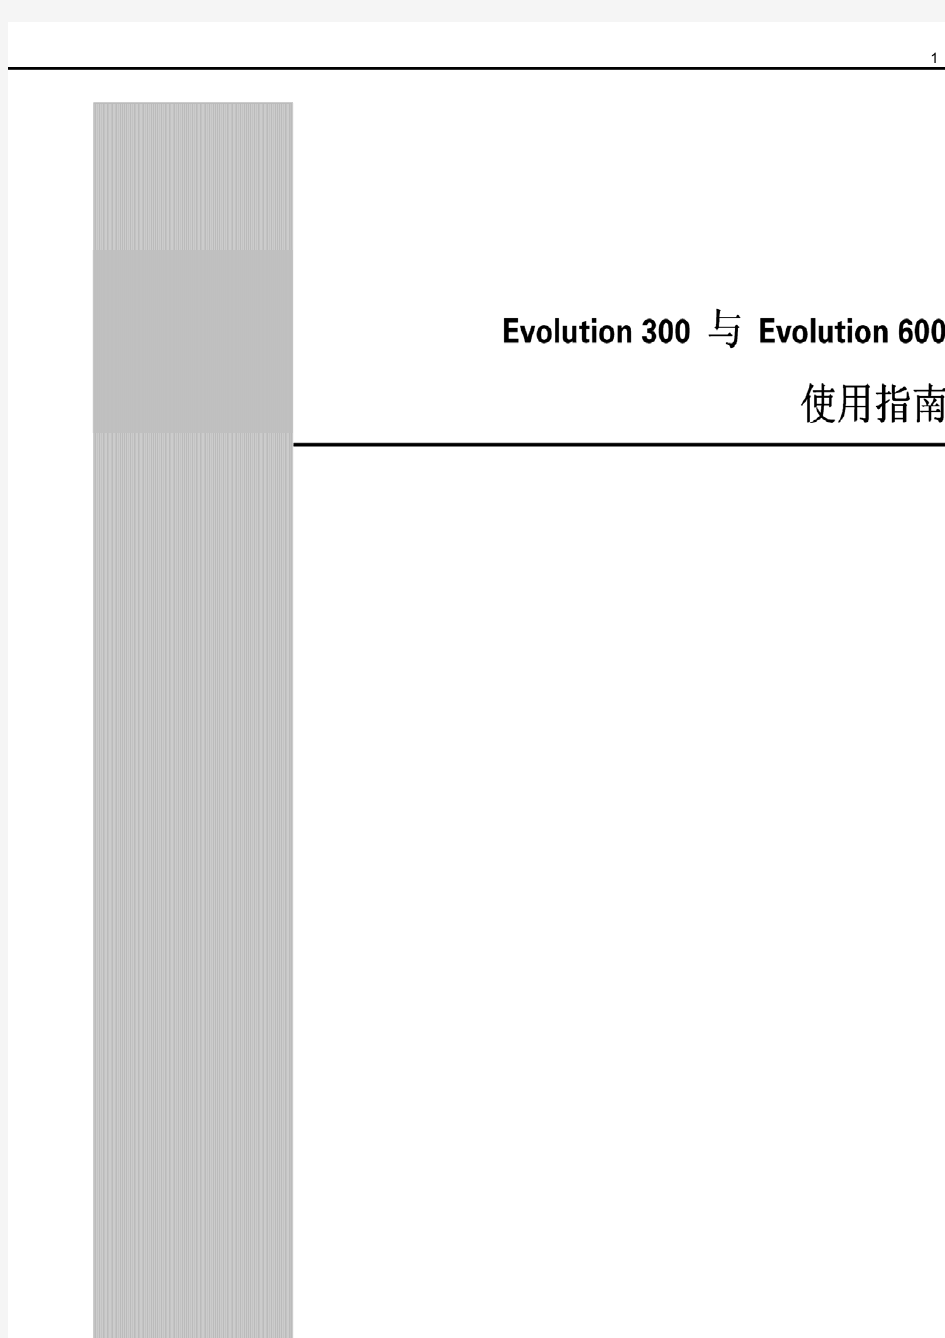 紫外分光光度计 evolution300中文中文使用说明书